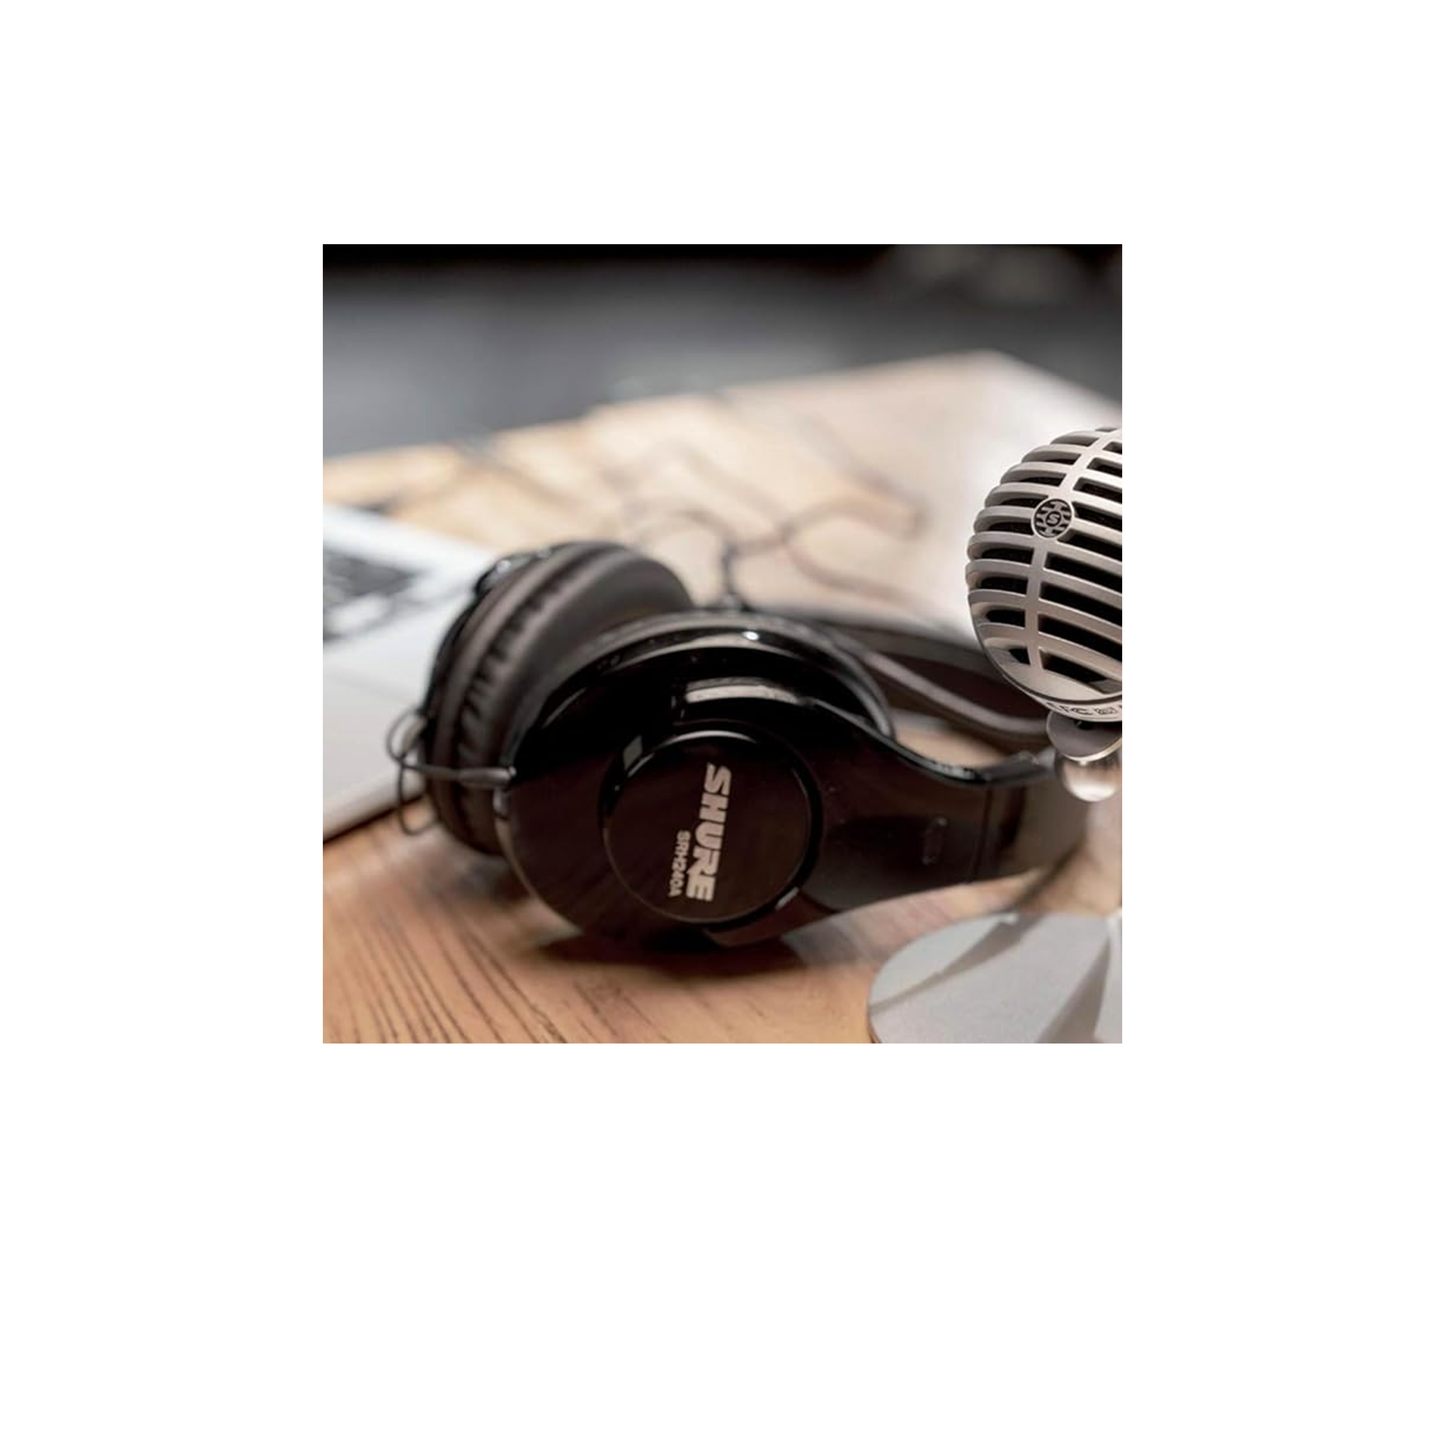 سماعات الرأس Shure SRH240A ذات الجودة الاحترافية - للتسجيل المنزلي والاستماع اليومي، محركات ديناميكية من النيوديميوم مقاس 40 مم للحصول على صوت جهير كامل وارتفاعات تفصيلية، محول مطلي بالنيكل مقاس 1/4 بوصة (6.3 مم) 